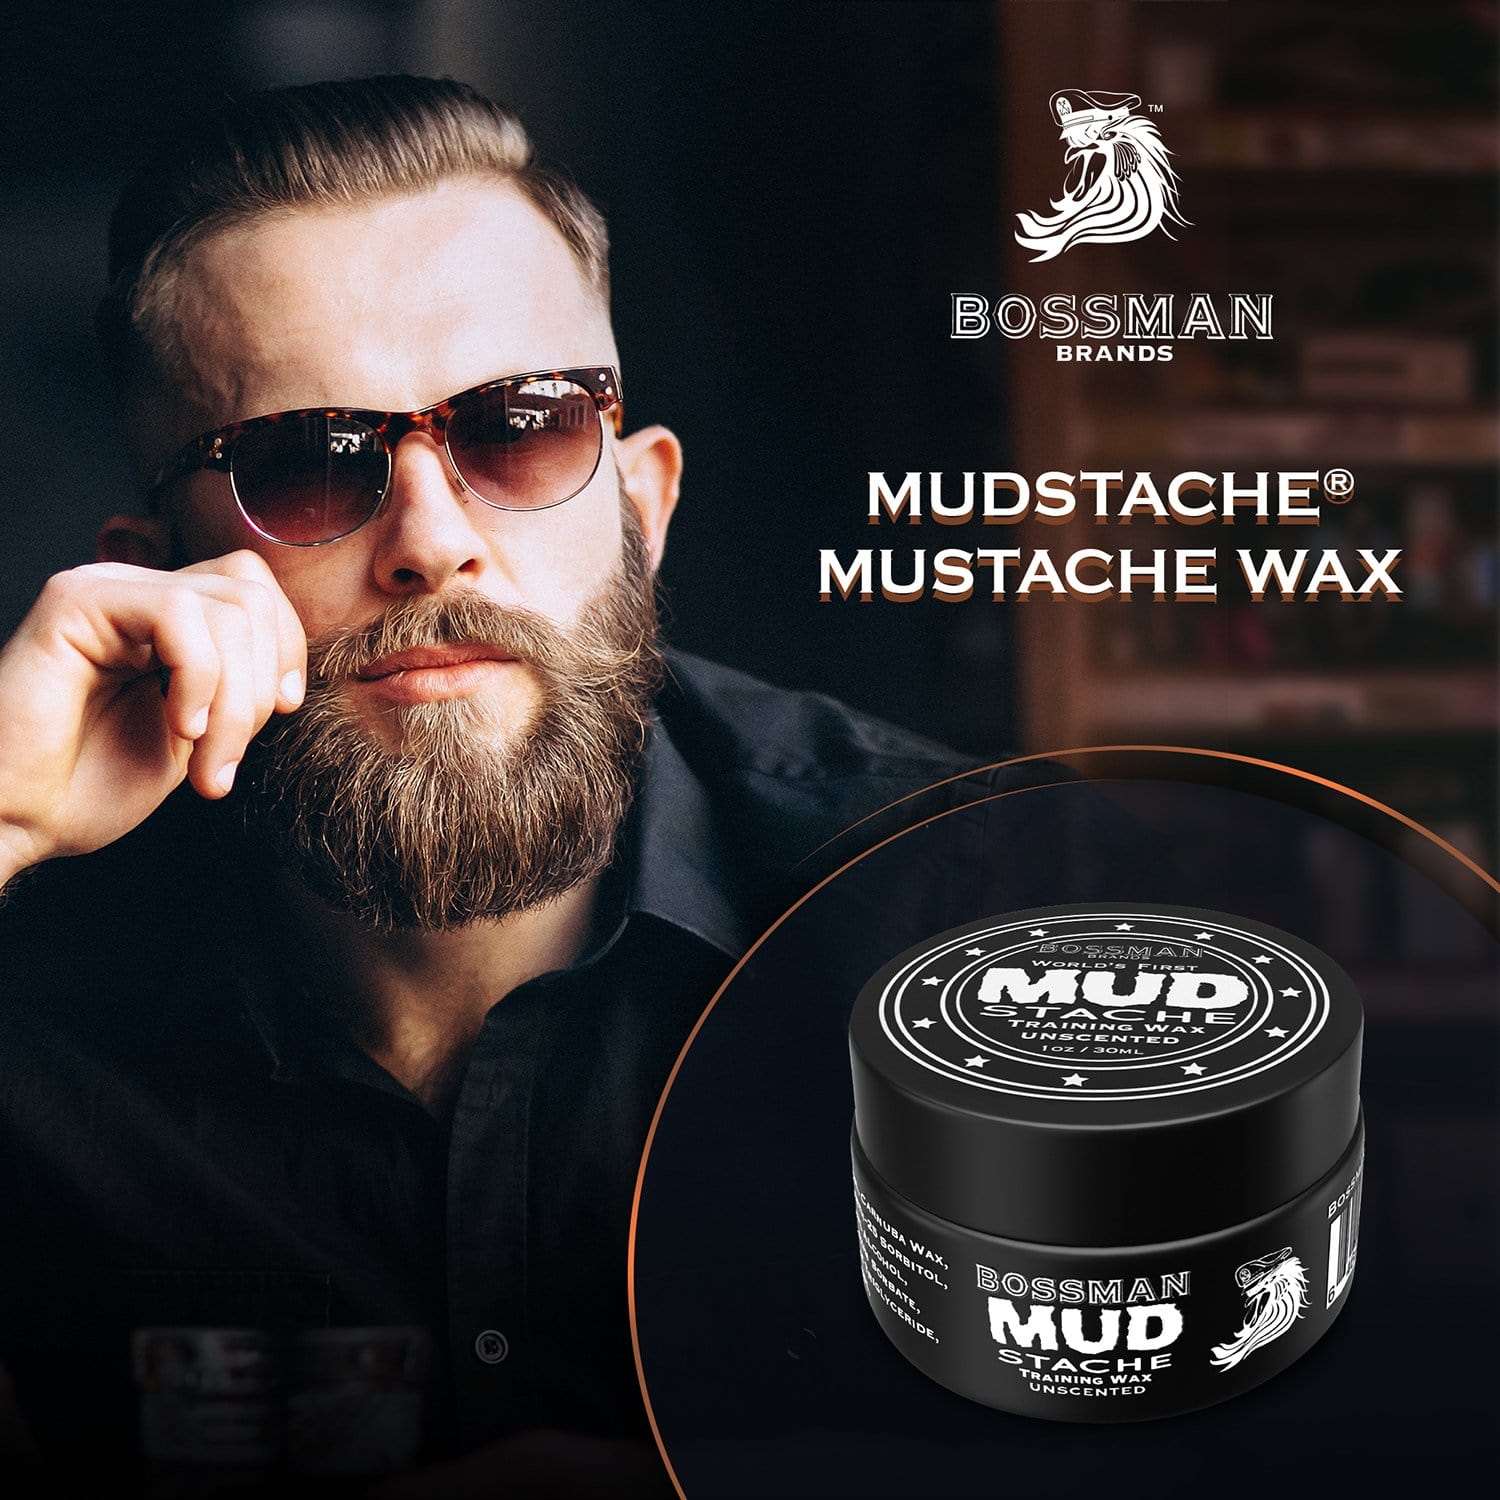 MUDstache® Mustache Training Wax Bossman Brands